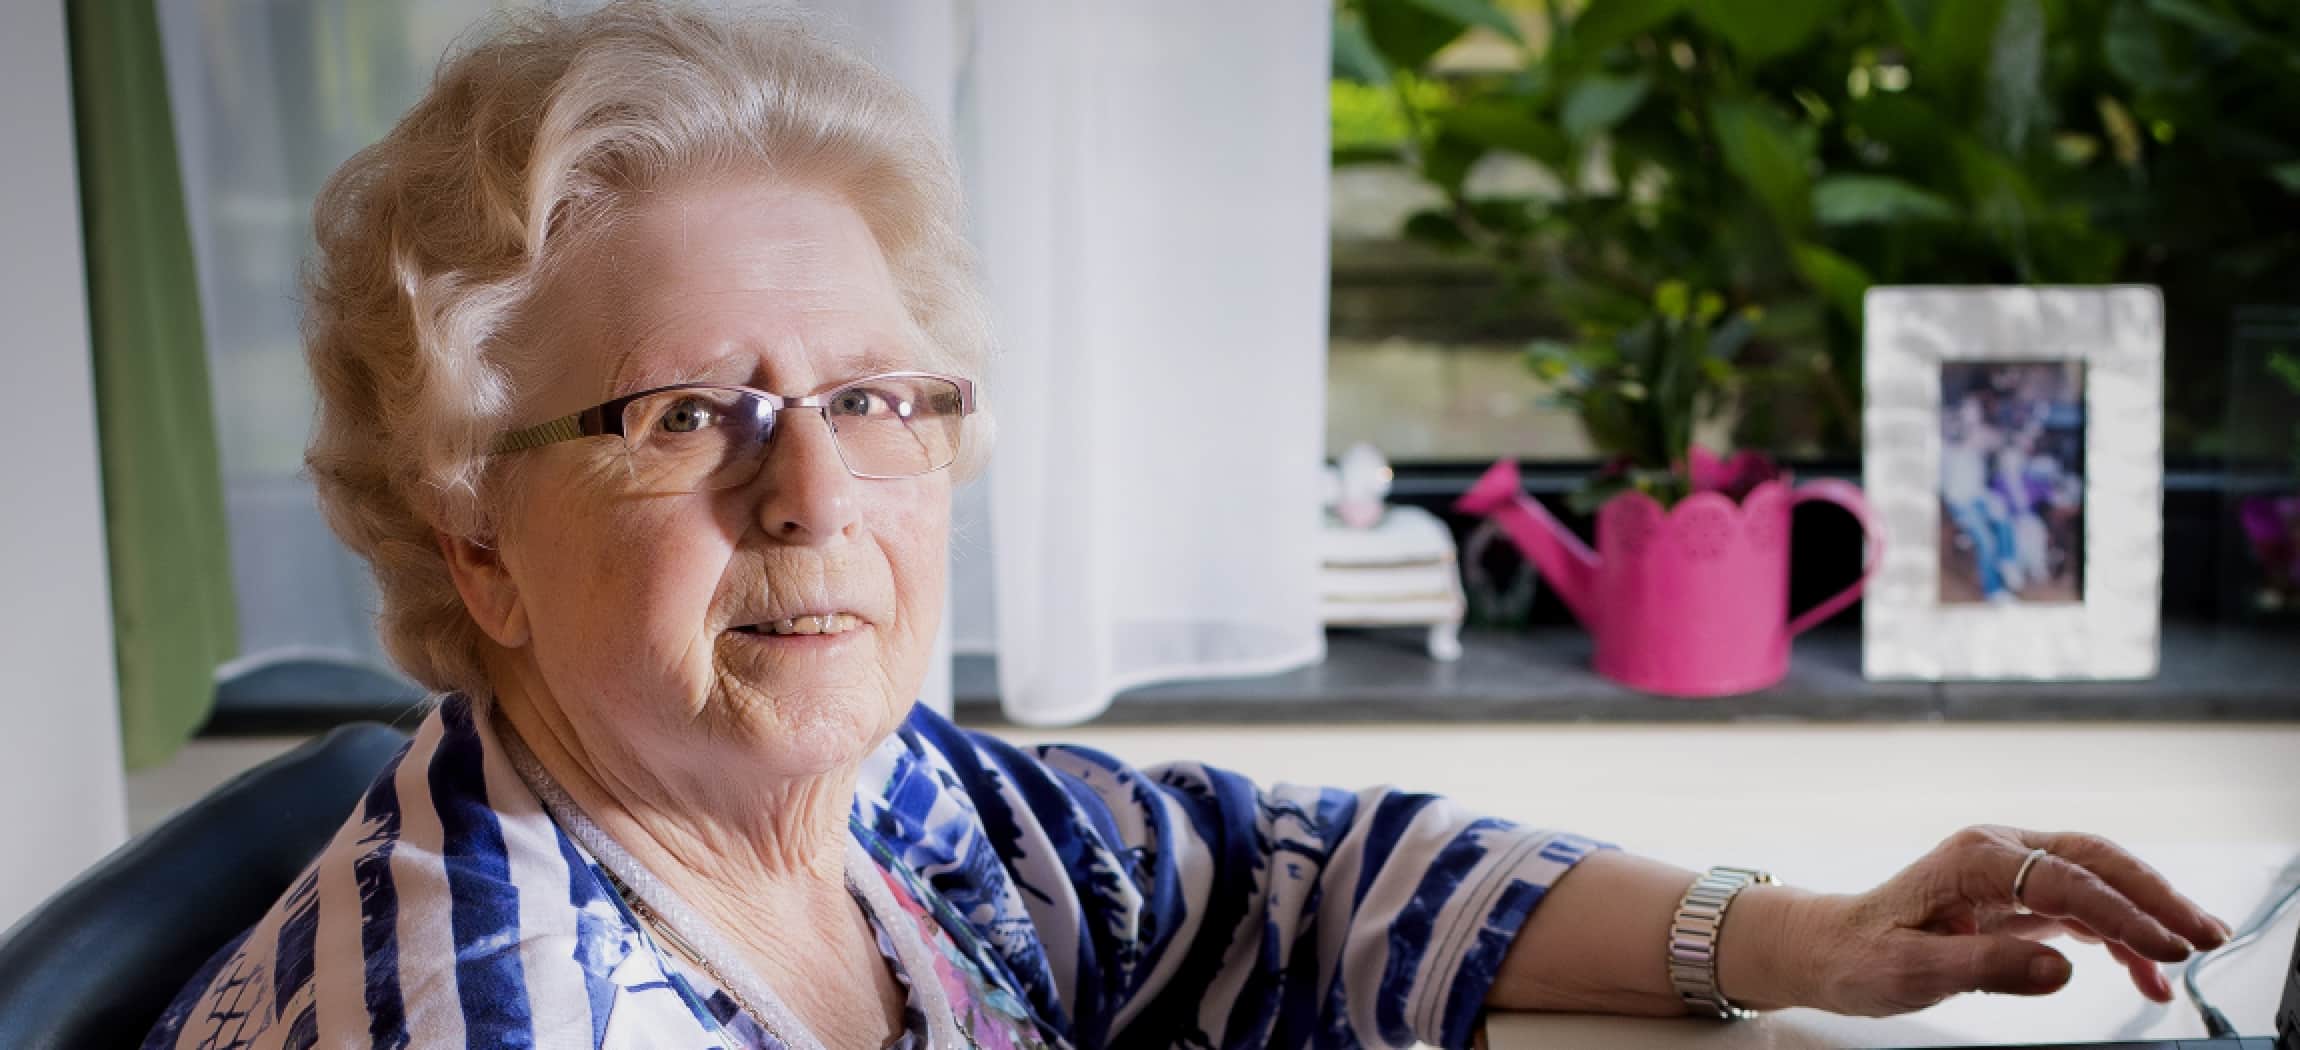 Mevrouw van der Laan woont in verpleeghuis Bornholm - uit de serie Mensen van Amstelring